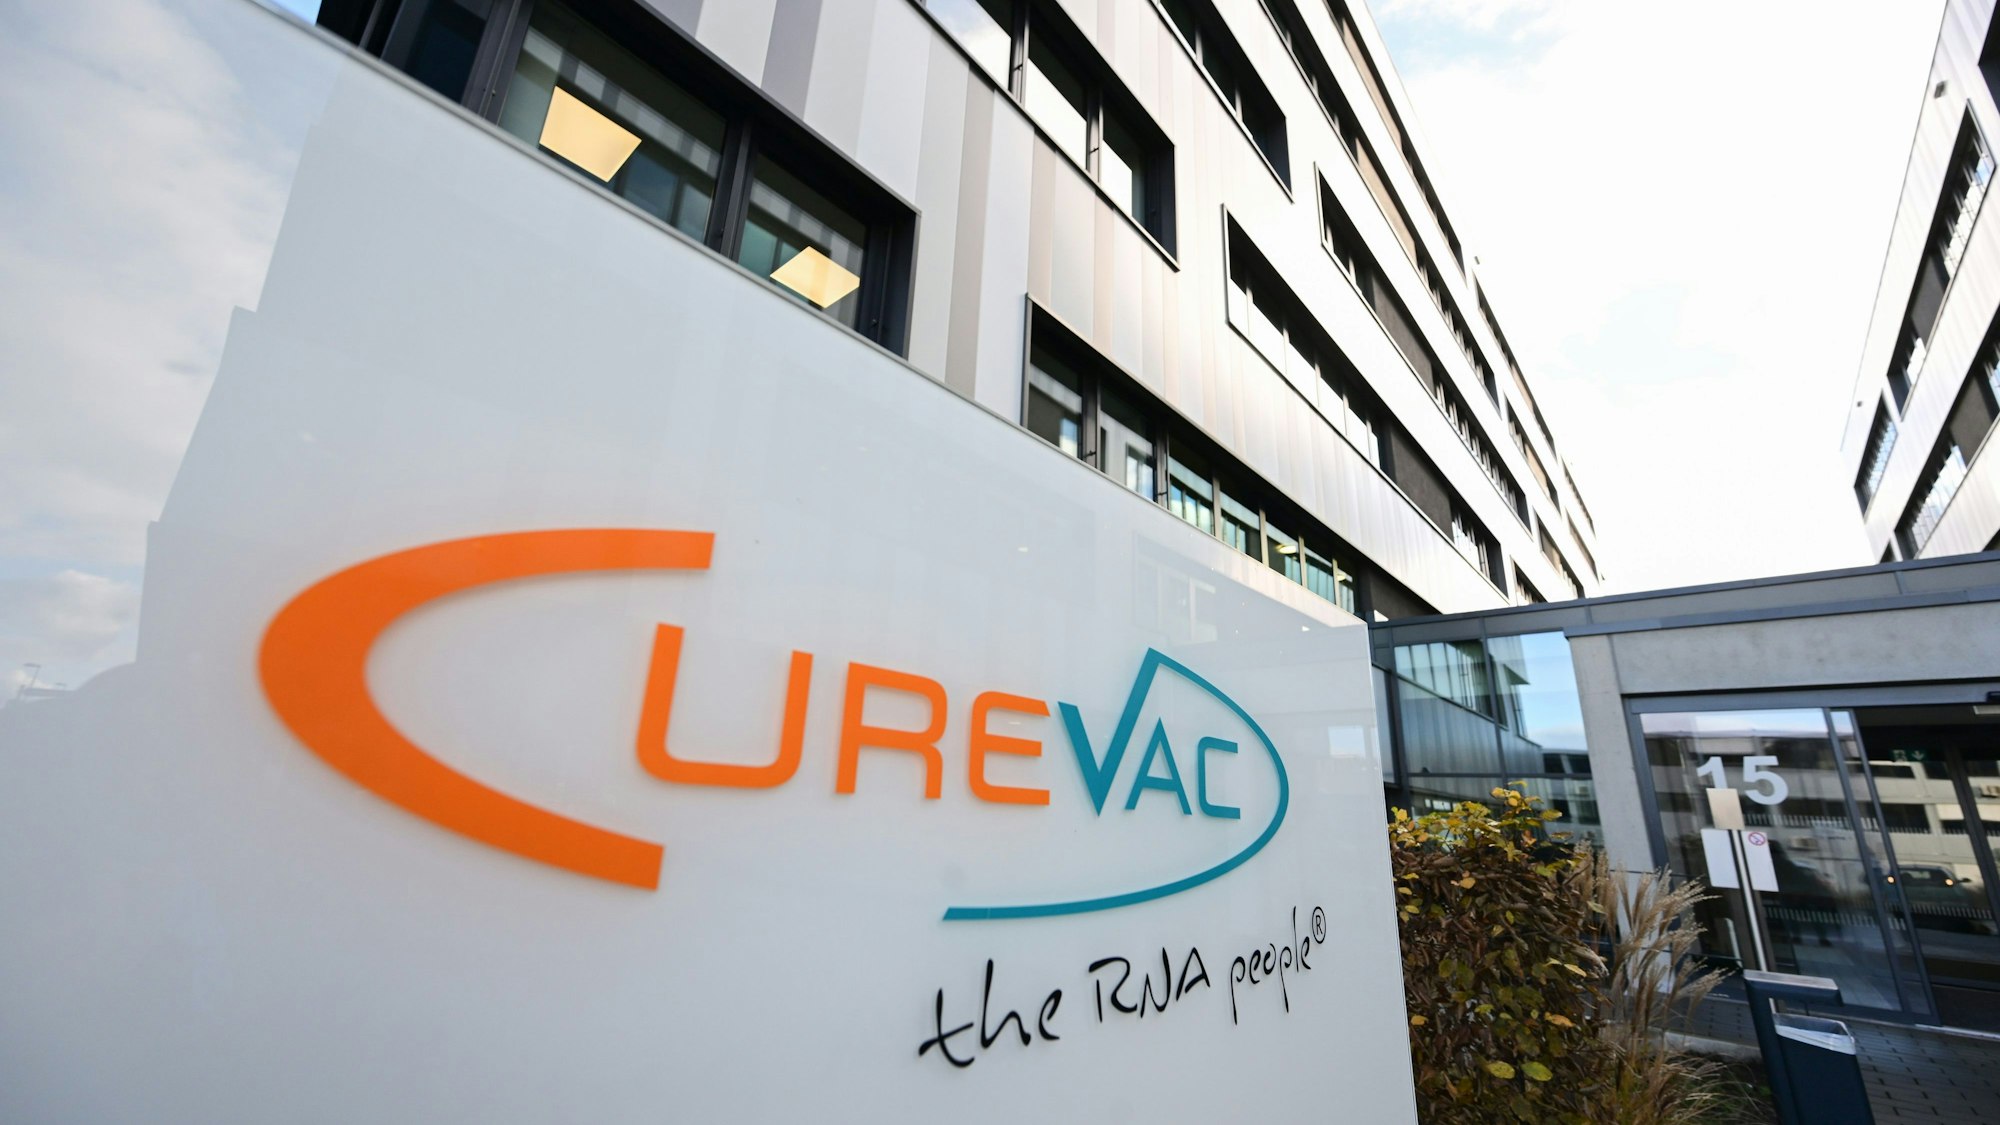 Das Logo des Biotechnologieunternehmens Curevac, aufgenommen vor dem Firmensitz.